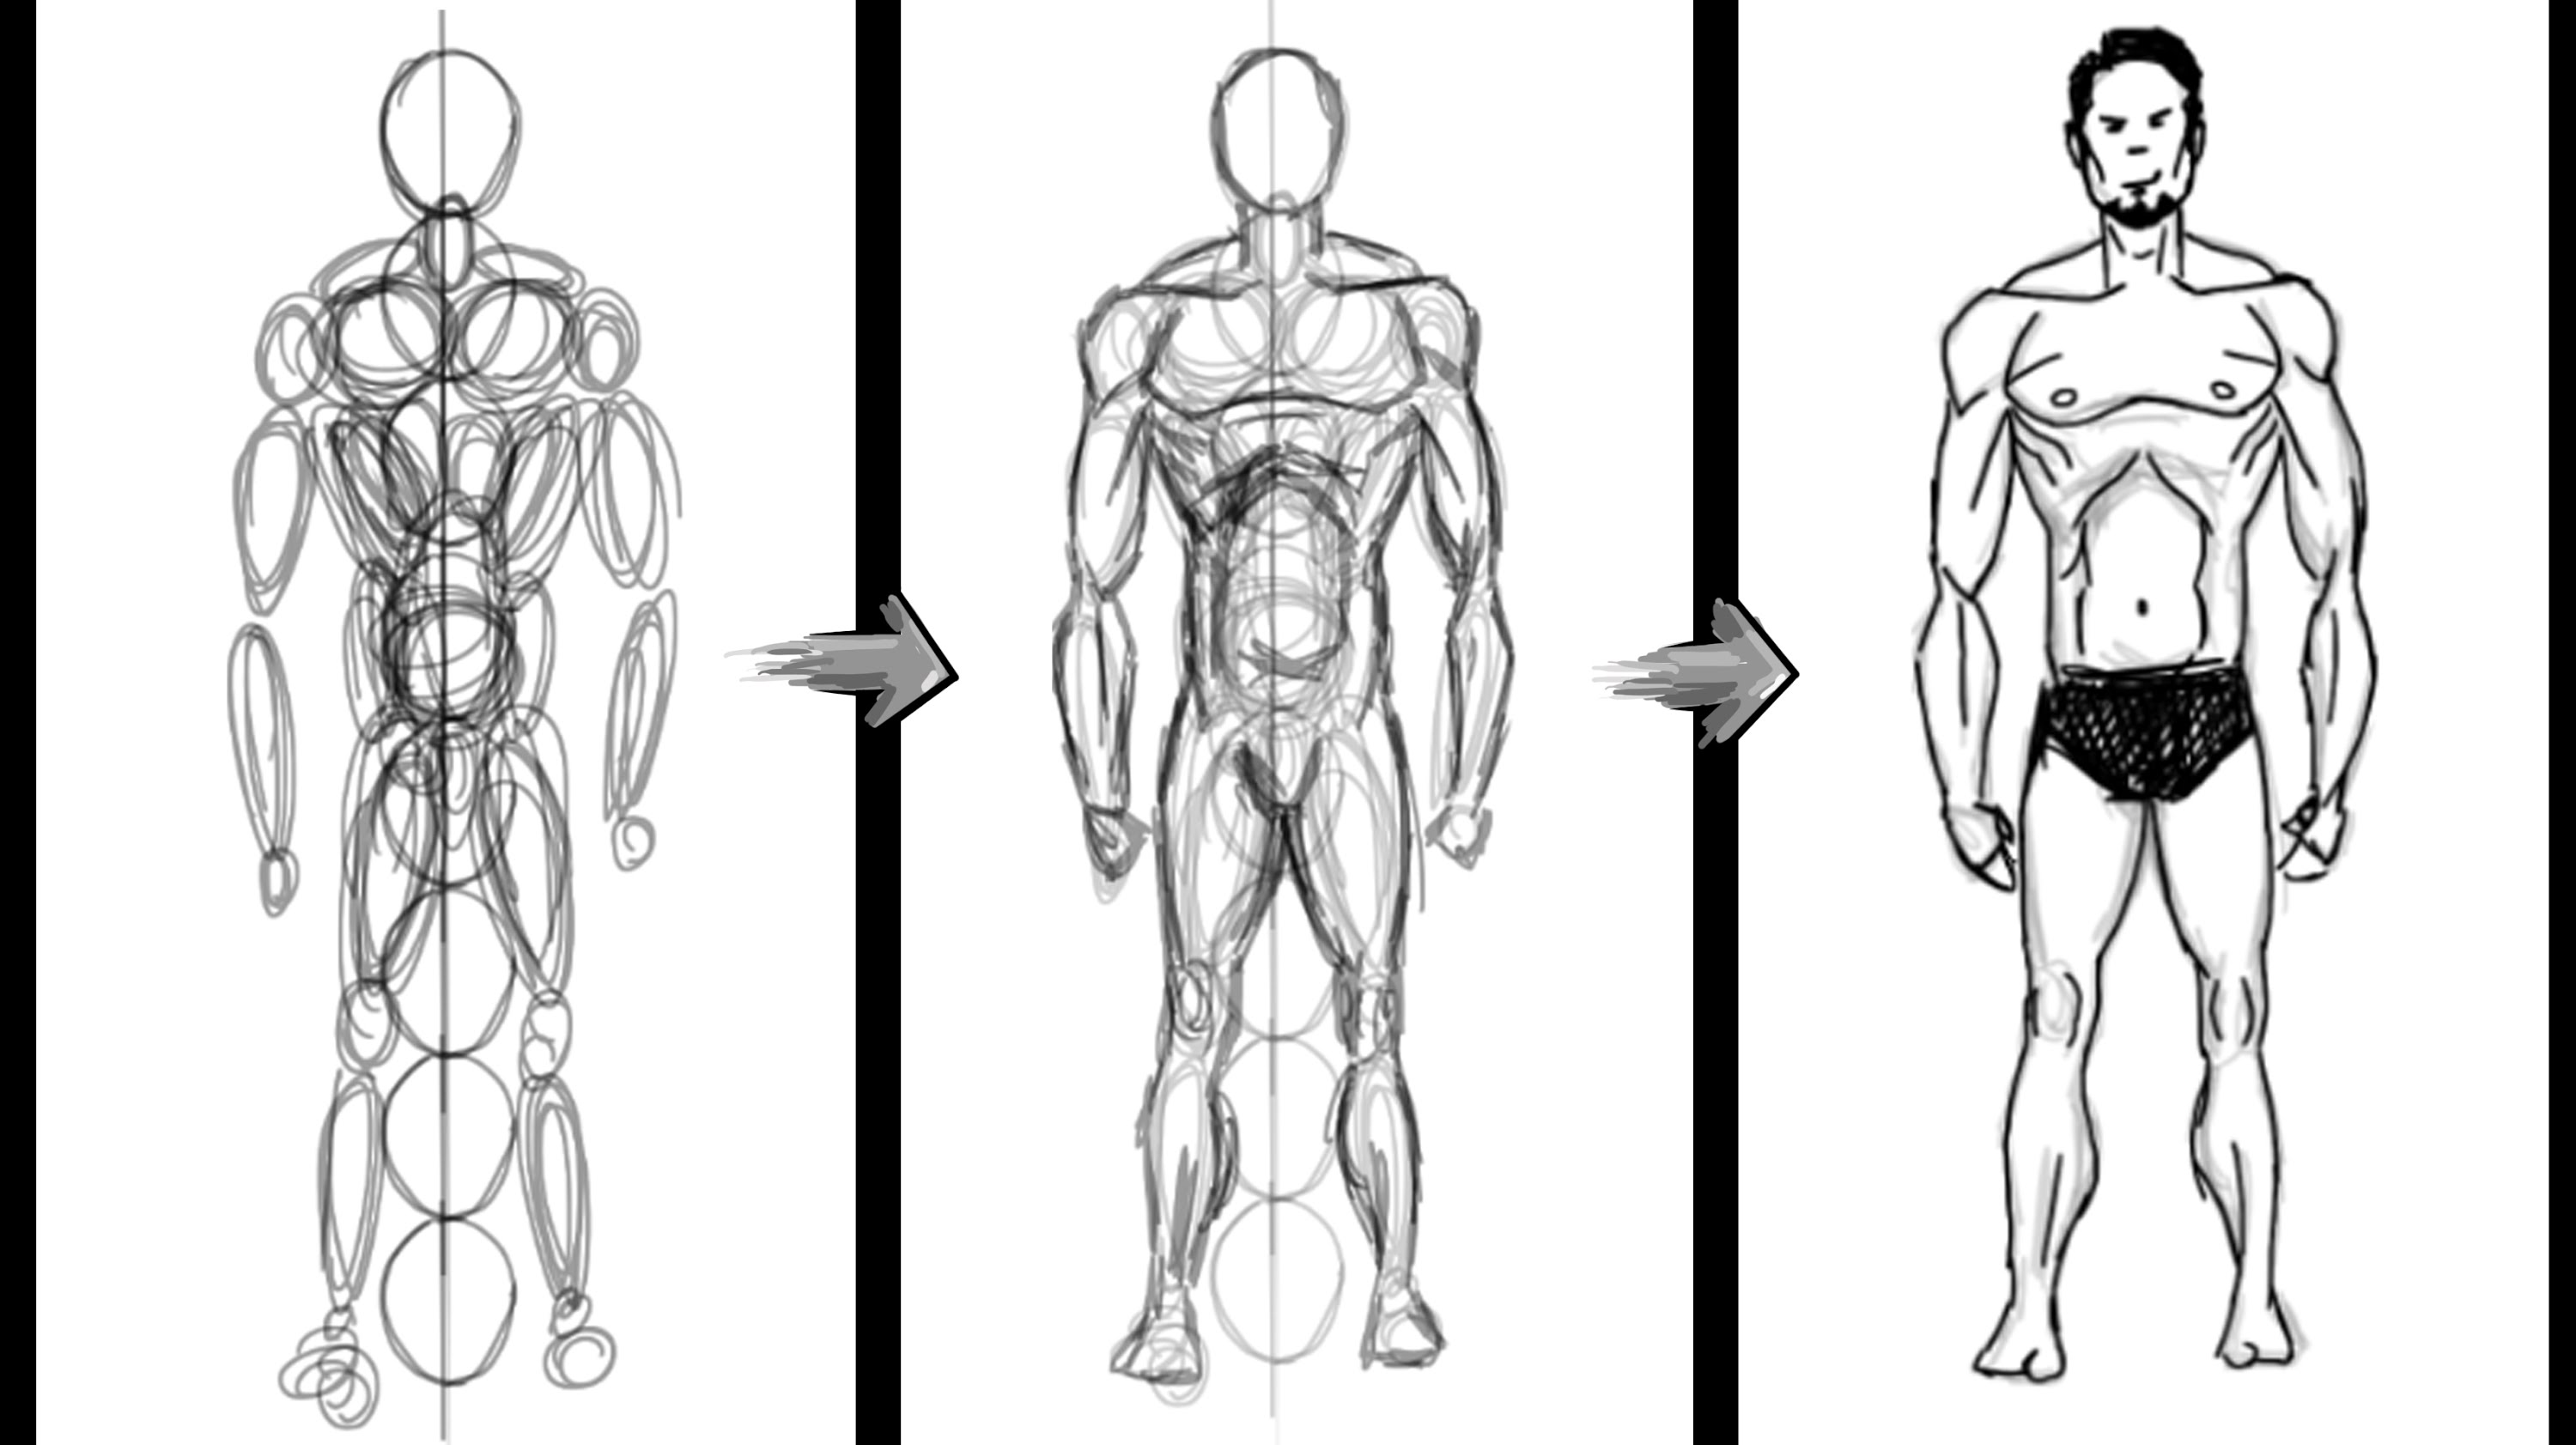 Anatomical Drawing Of Human Body / Human Anatomy Drawing At Getdrawings